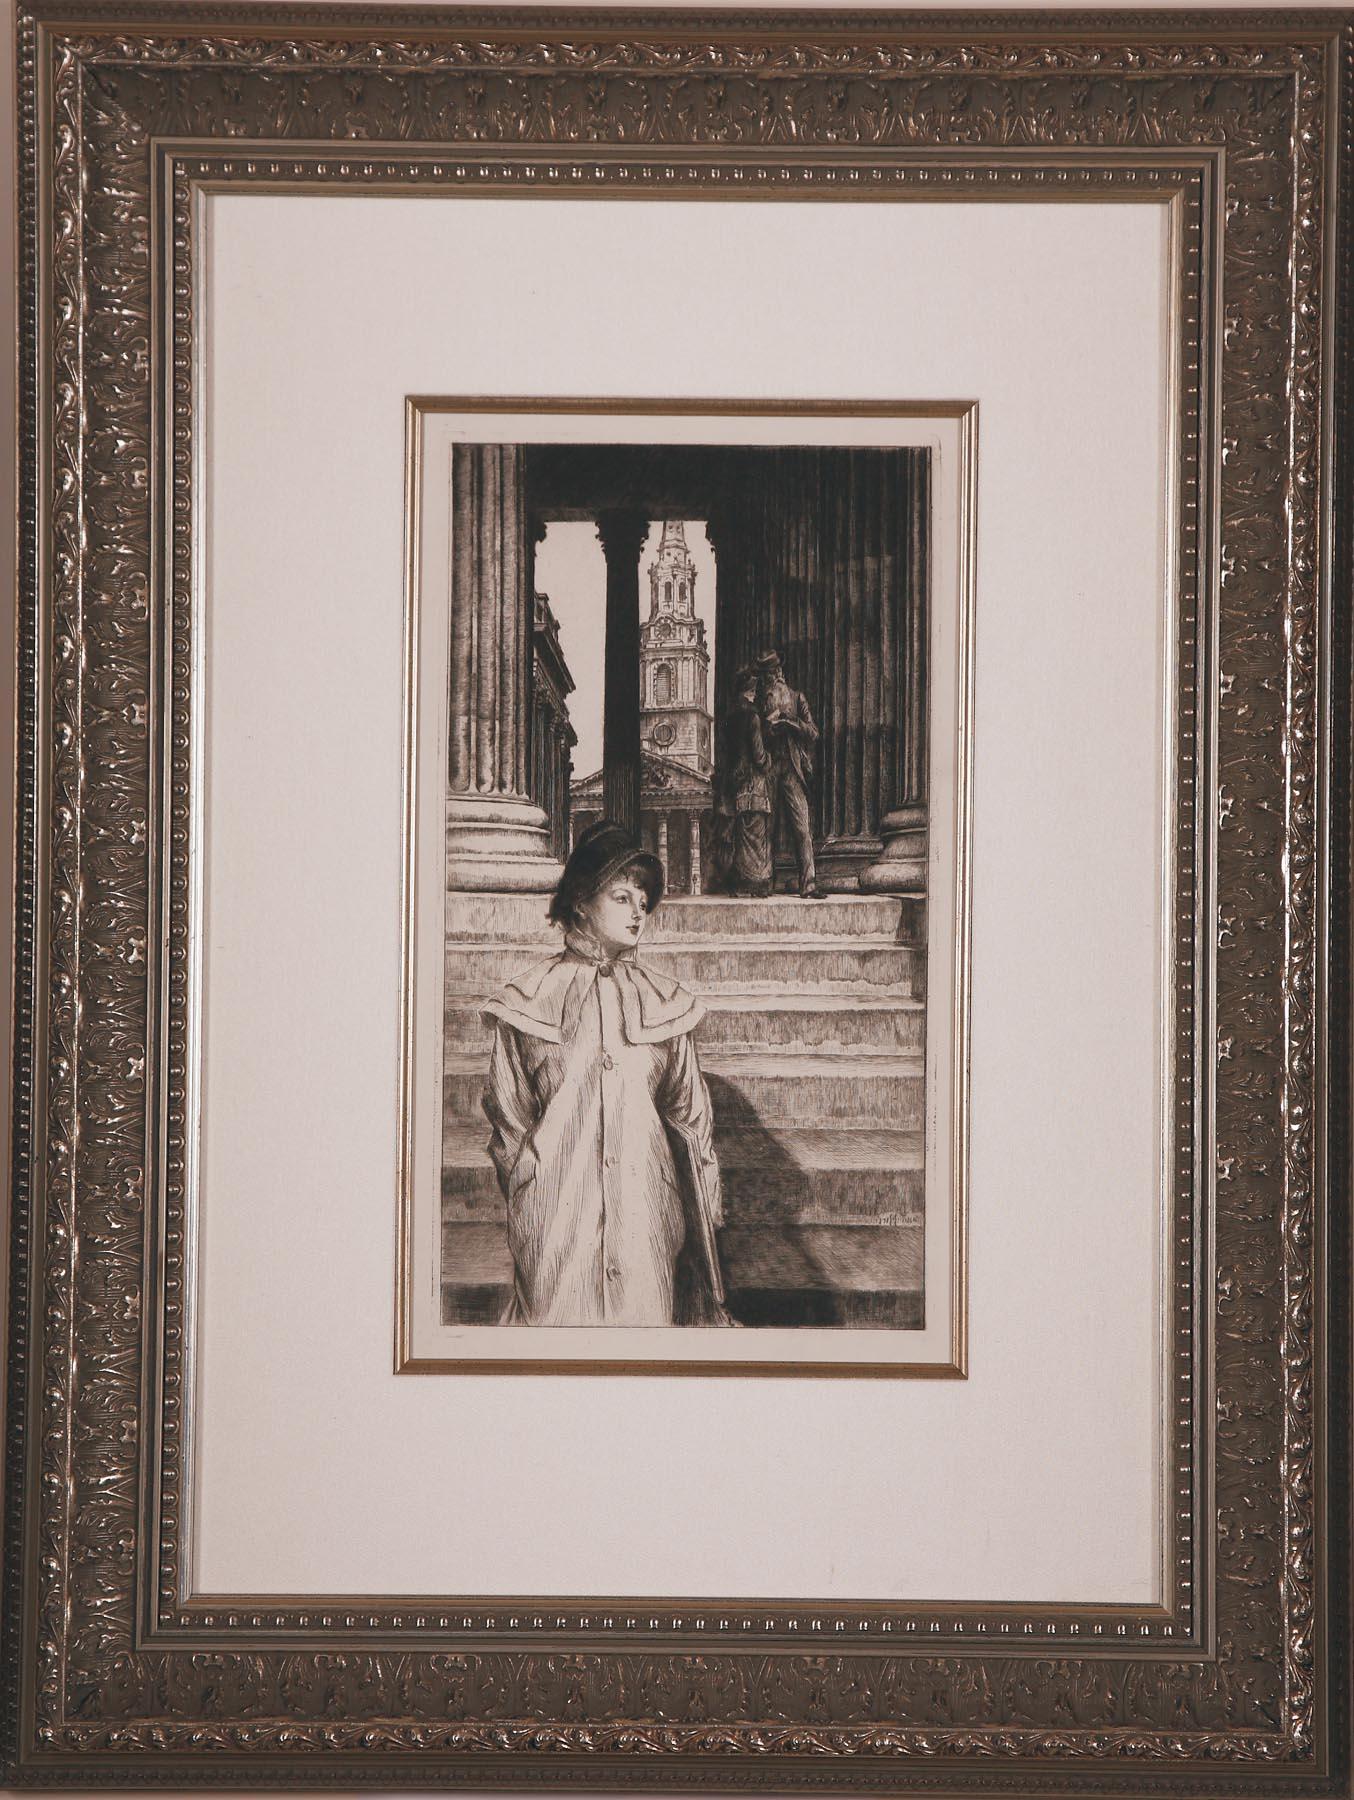 Le Portique de la Galerie Nationale de Londres par J.J. TISSOT - Print de James Jacques Joseph Tissot